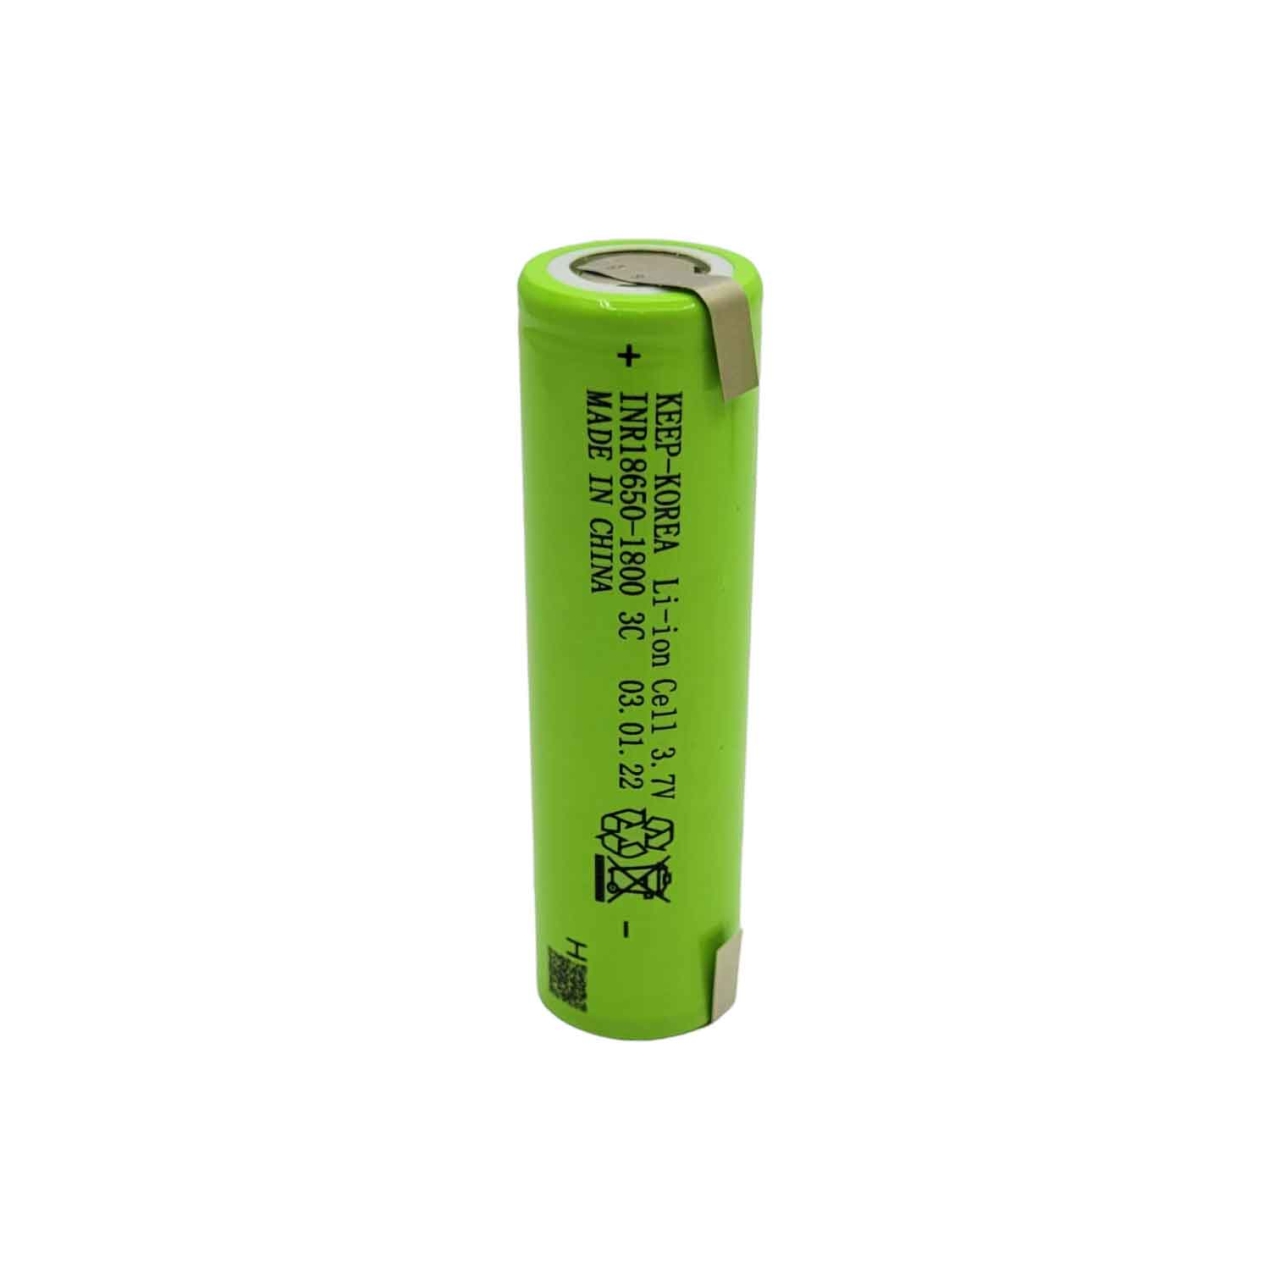 باتری لیتیوم یون قابل شارژ کیپ کره کد 18650 ظرفیت 1800 میلی آمپرساعت